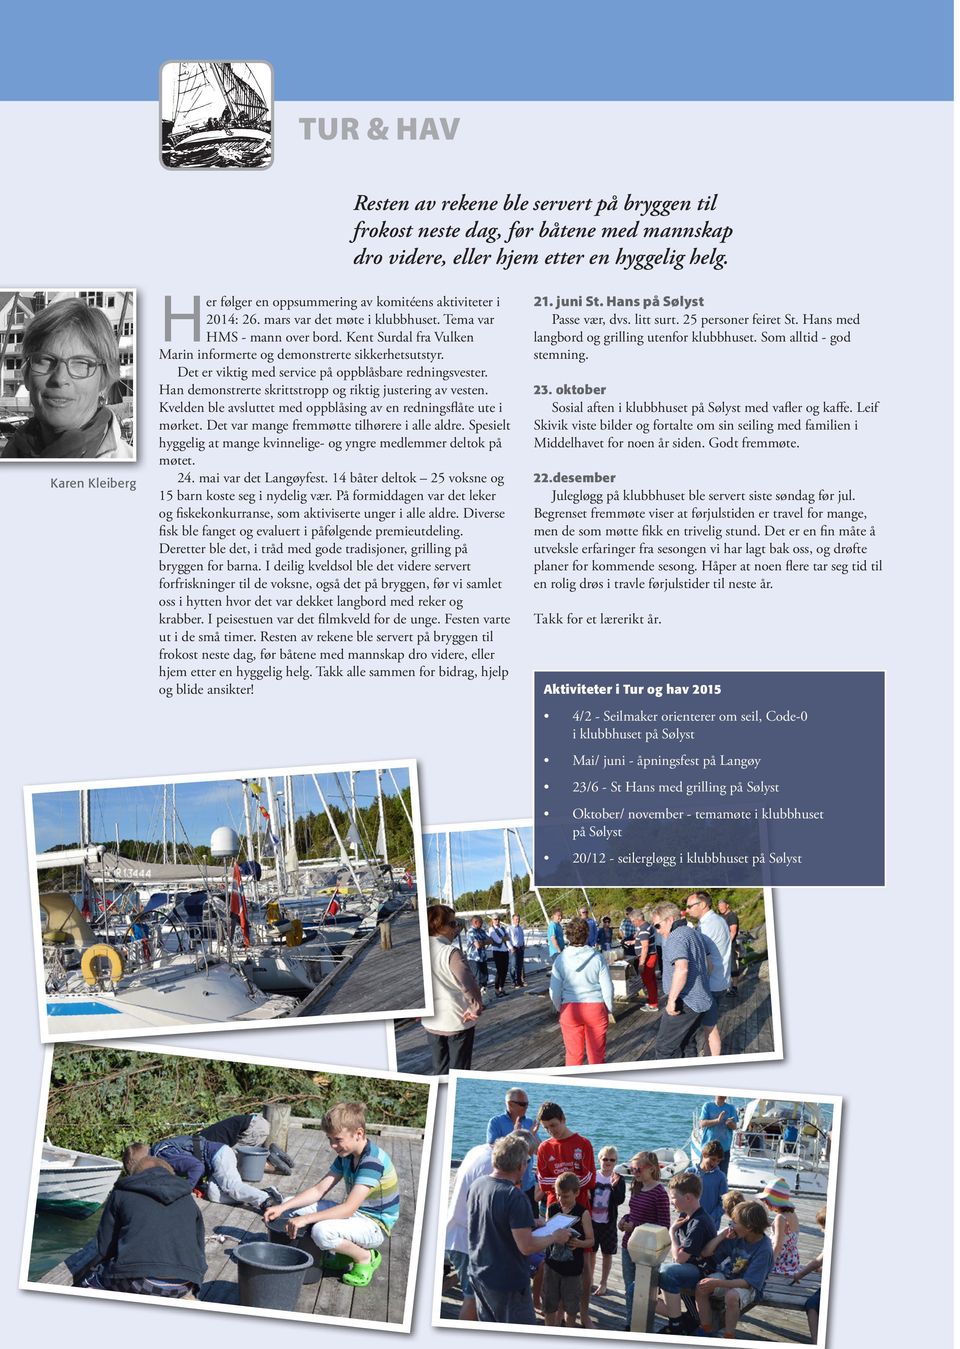 Seilforeningens havneanlegg skal være den mest attraktive seilsporthavnen i Stavanger-regionen med tilbud for voksne, ungdom og barn Bryggeanlegg skal være i teknisk forsvarlig stand slik at båter